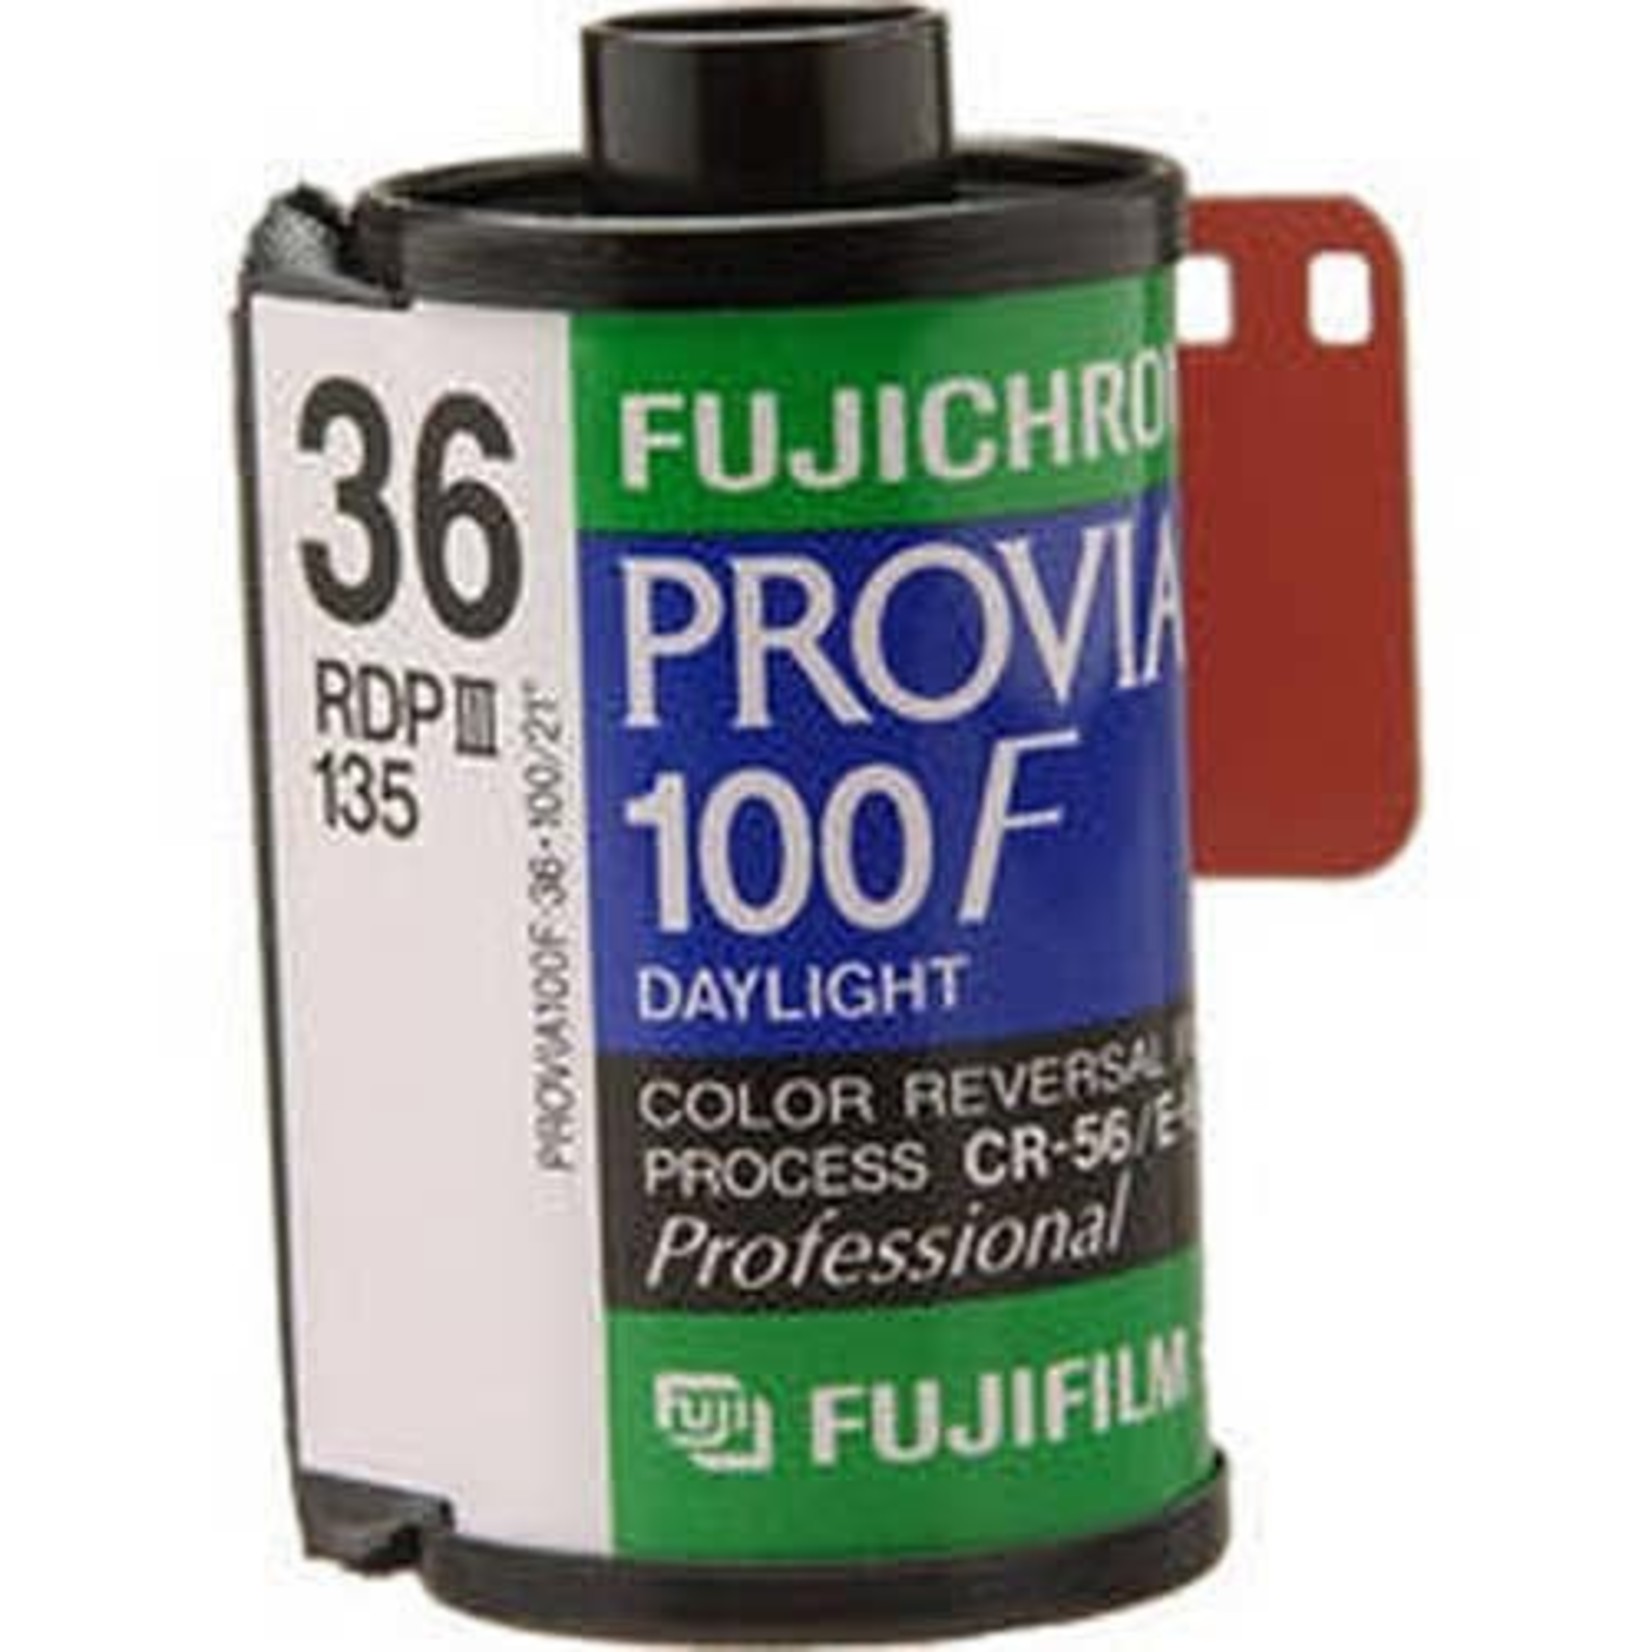 FujiFilm FujiFilm Provia 100 PRO RDPIII 135-36